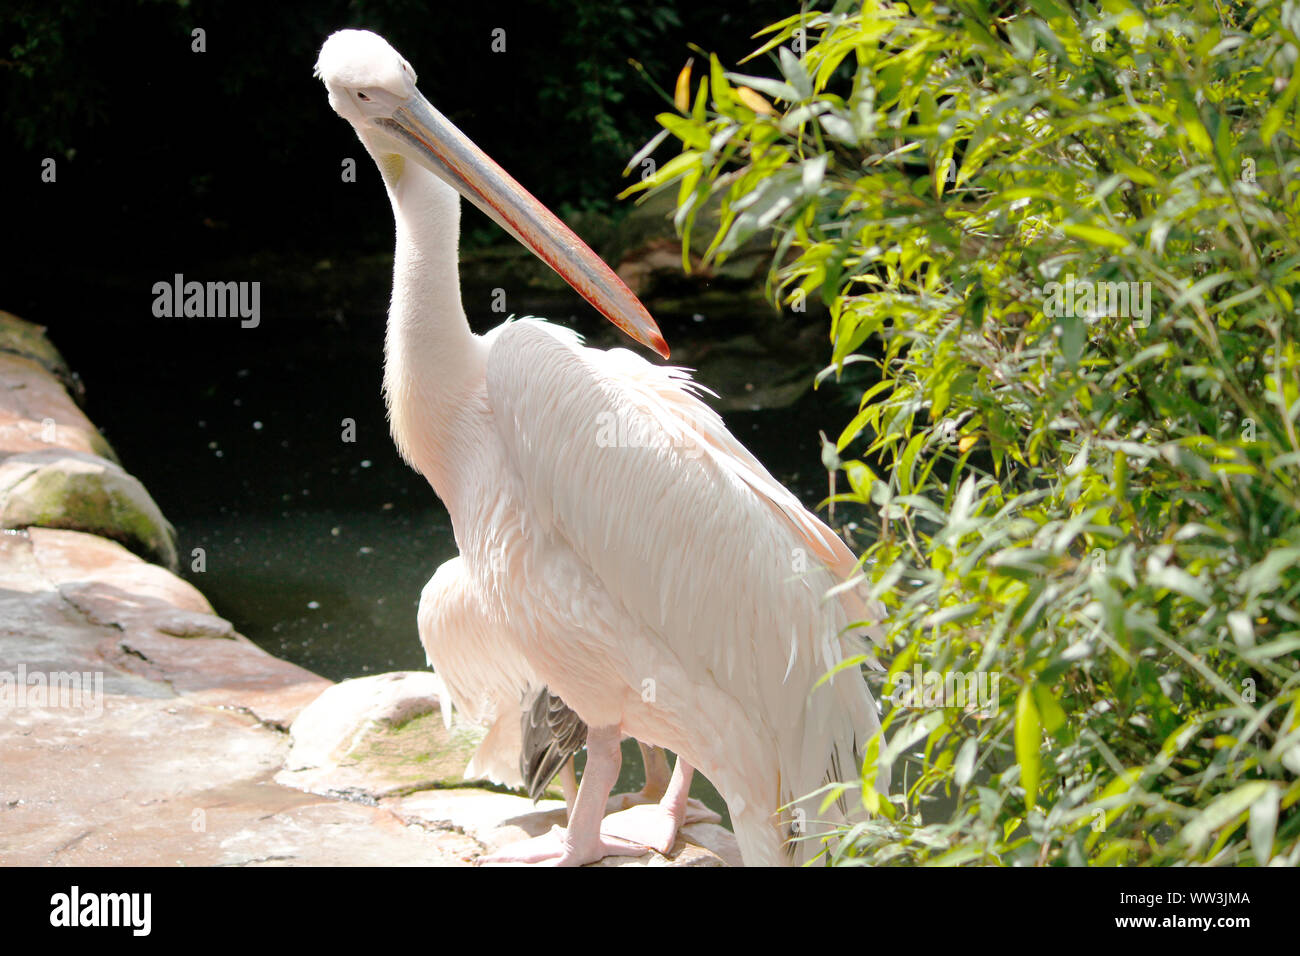 a behind looking looking pink pelican, Pelecanus onocrotalus Stock Photo